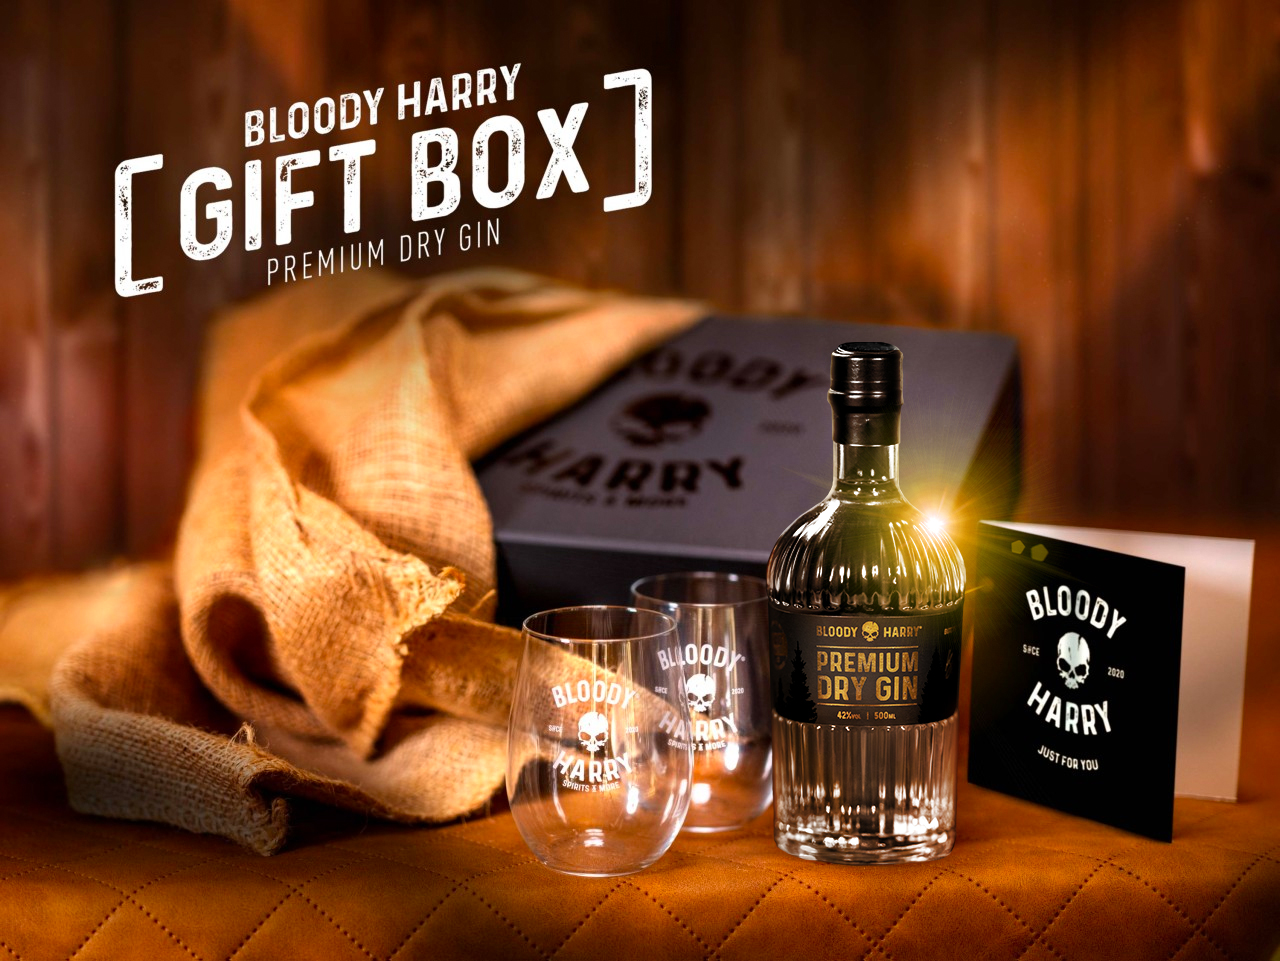 BLOODY HARRY Geschenk Box Premium Dry Gin